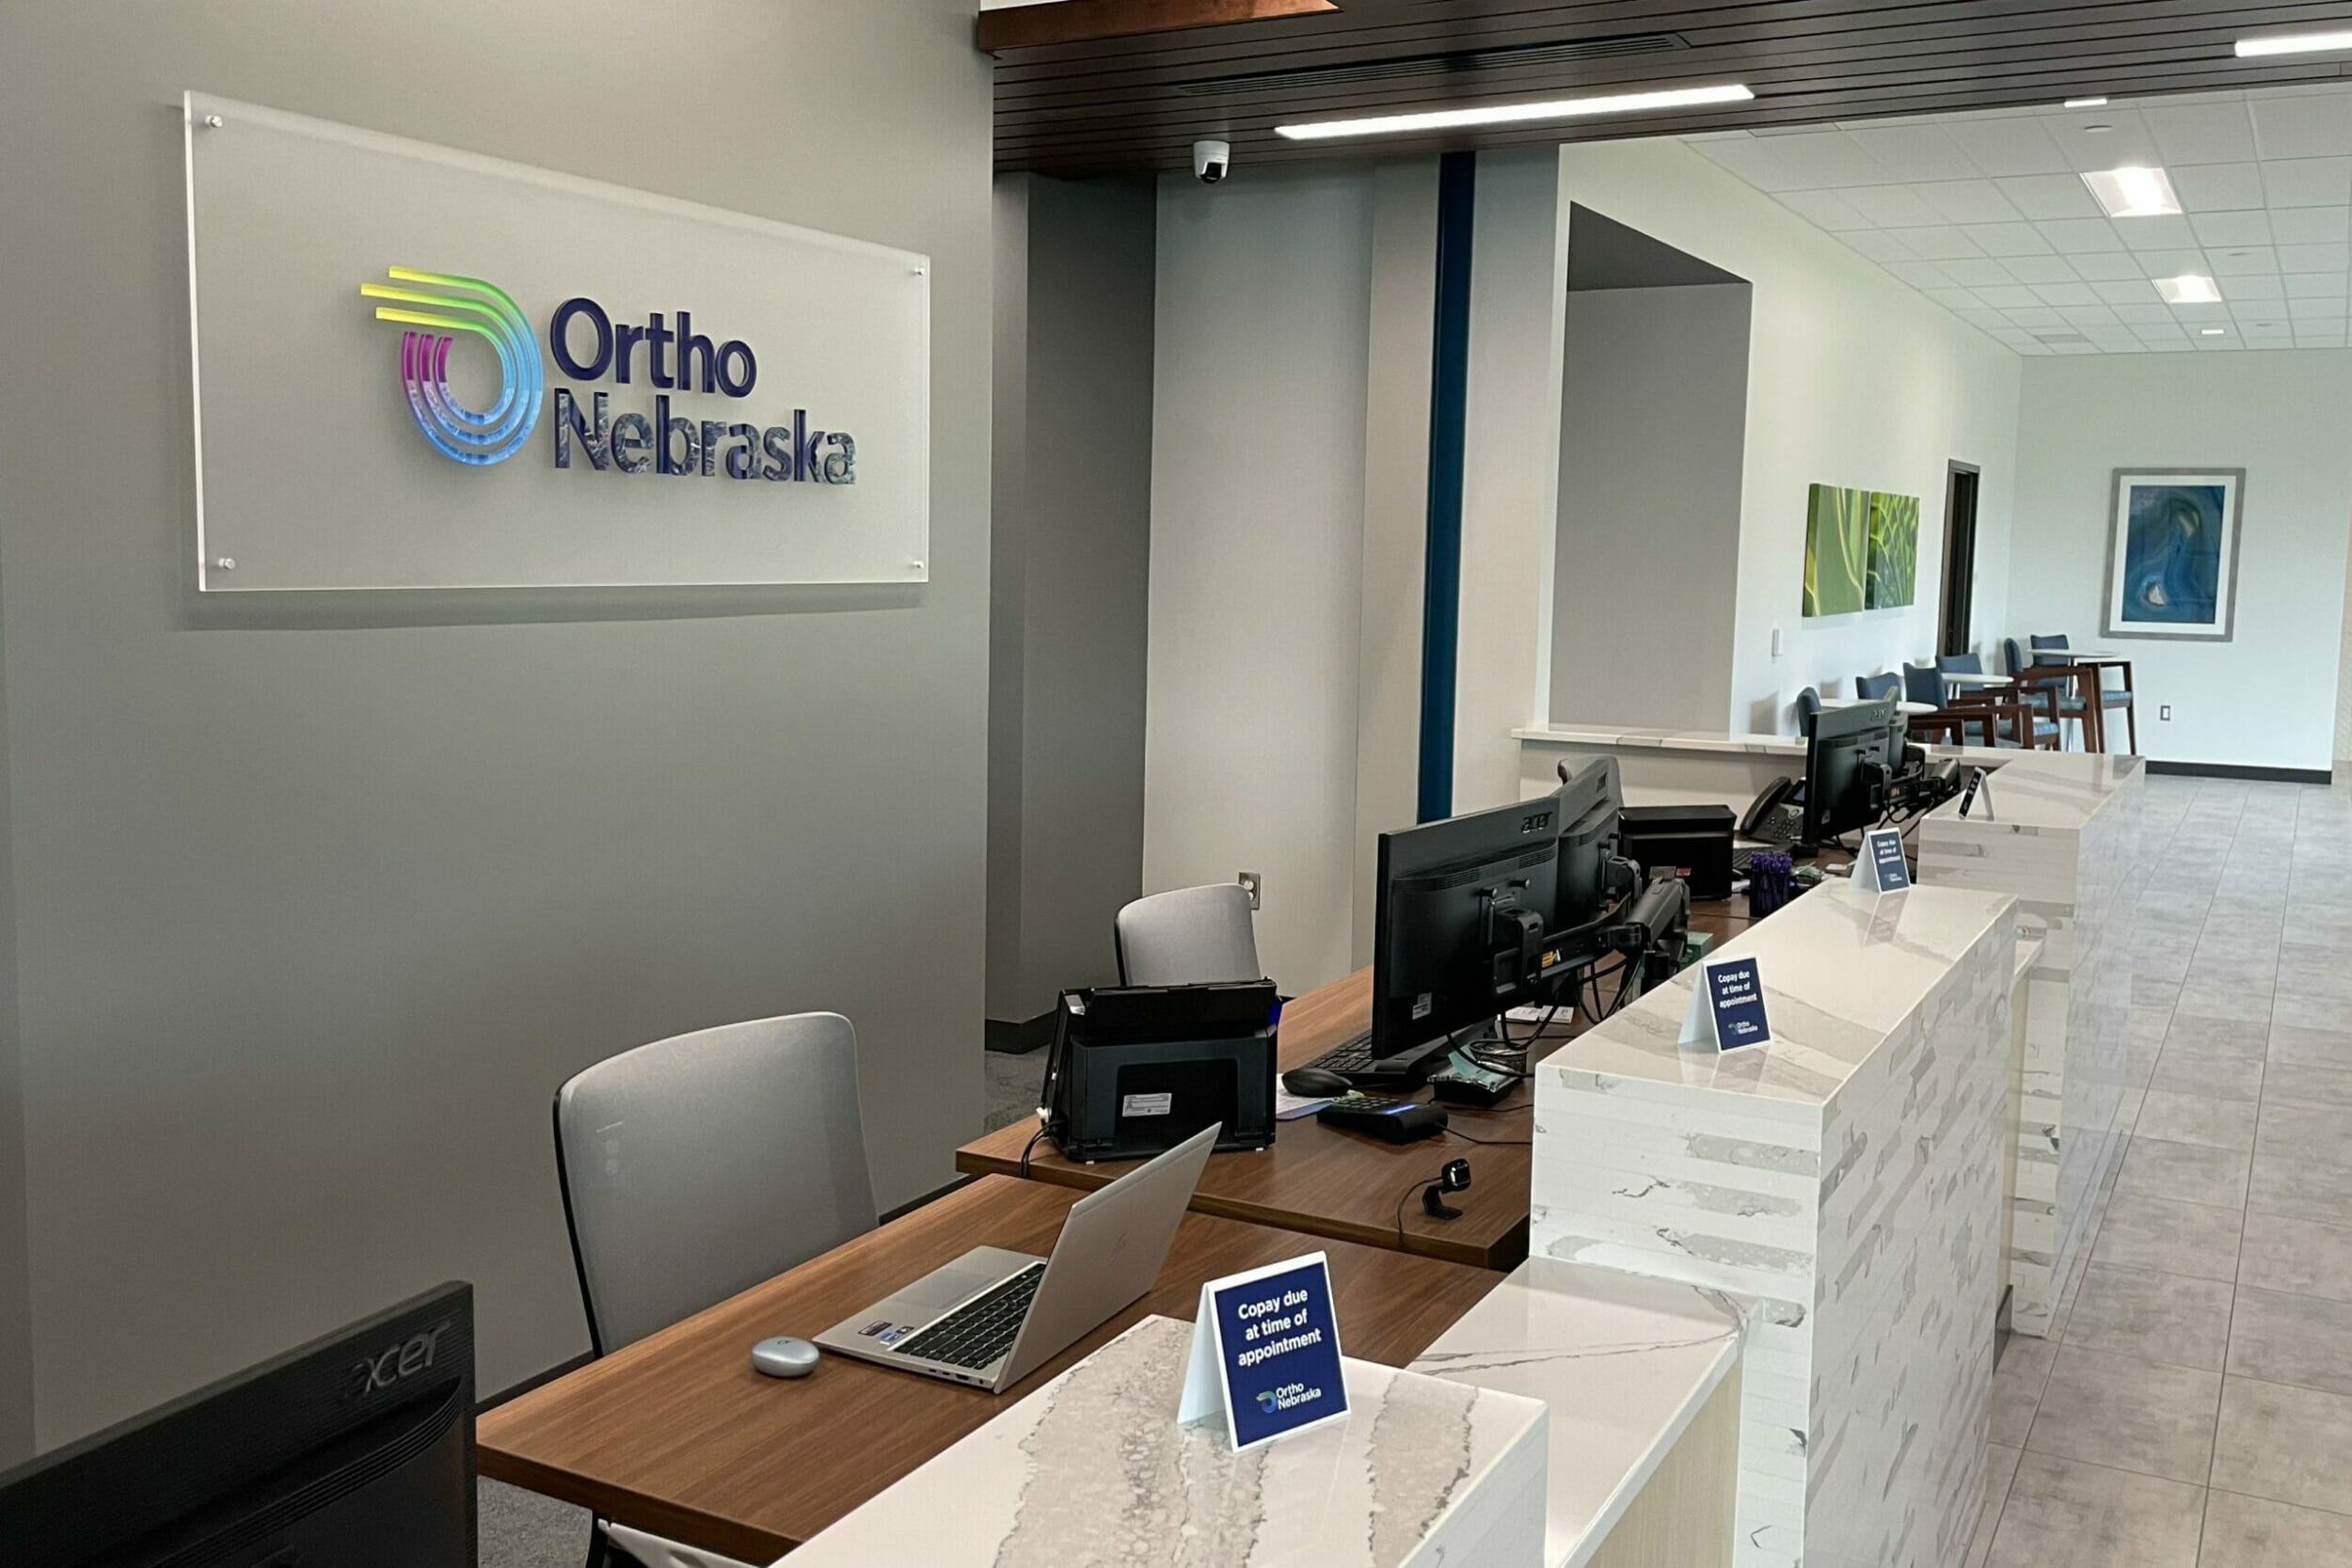 Check in desks/lobby OrthoNebraska orthopedic medical office building